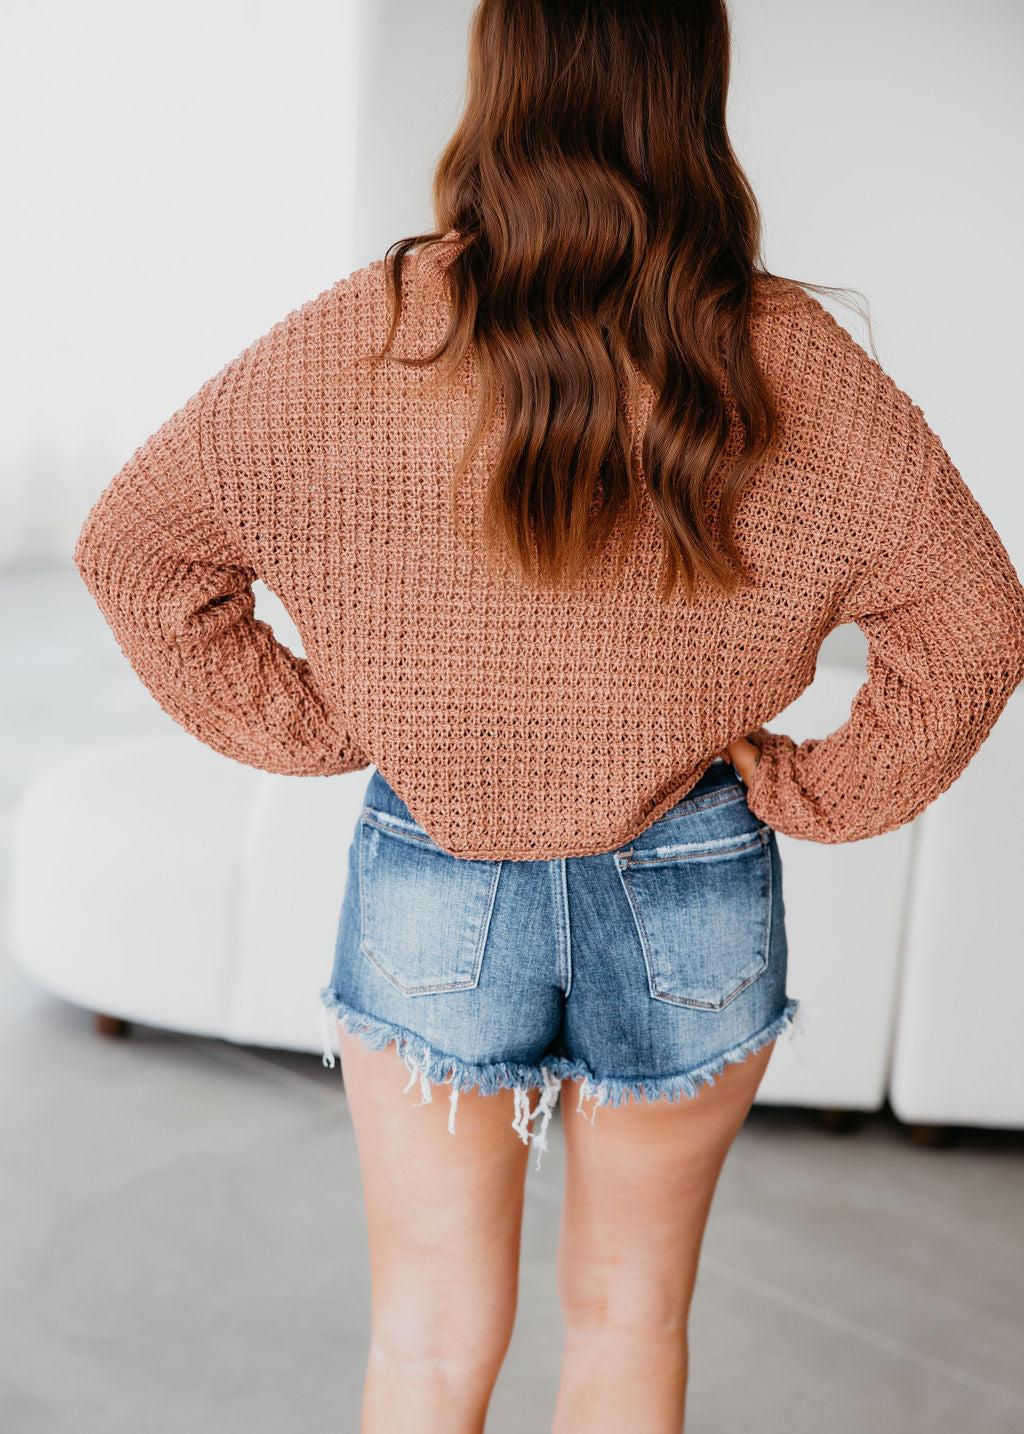 Lana Knit Sweater